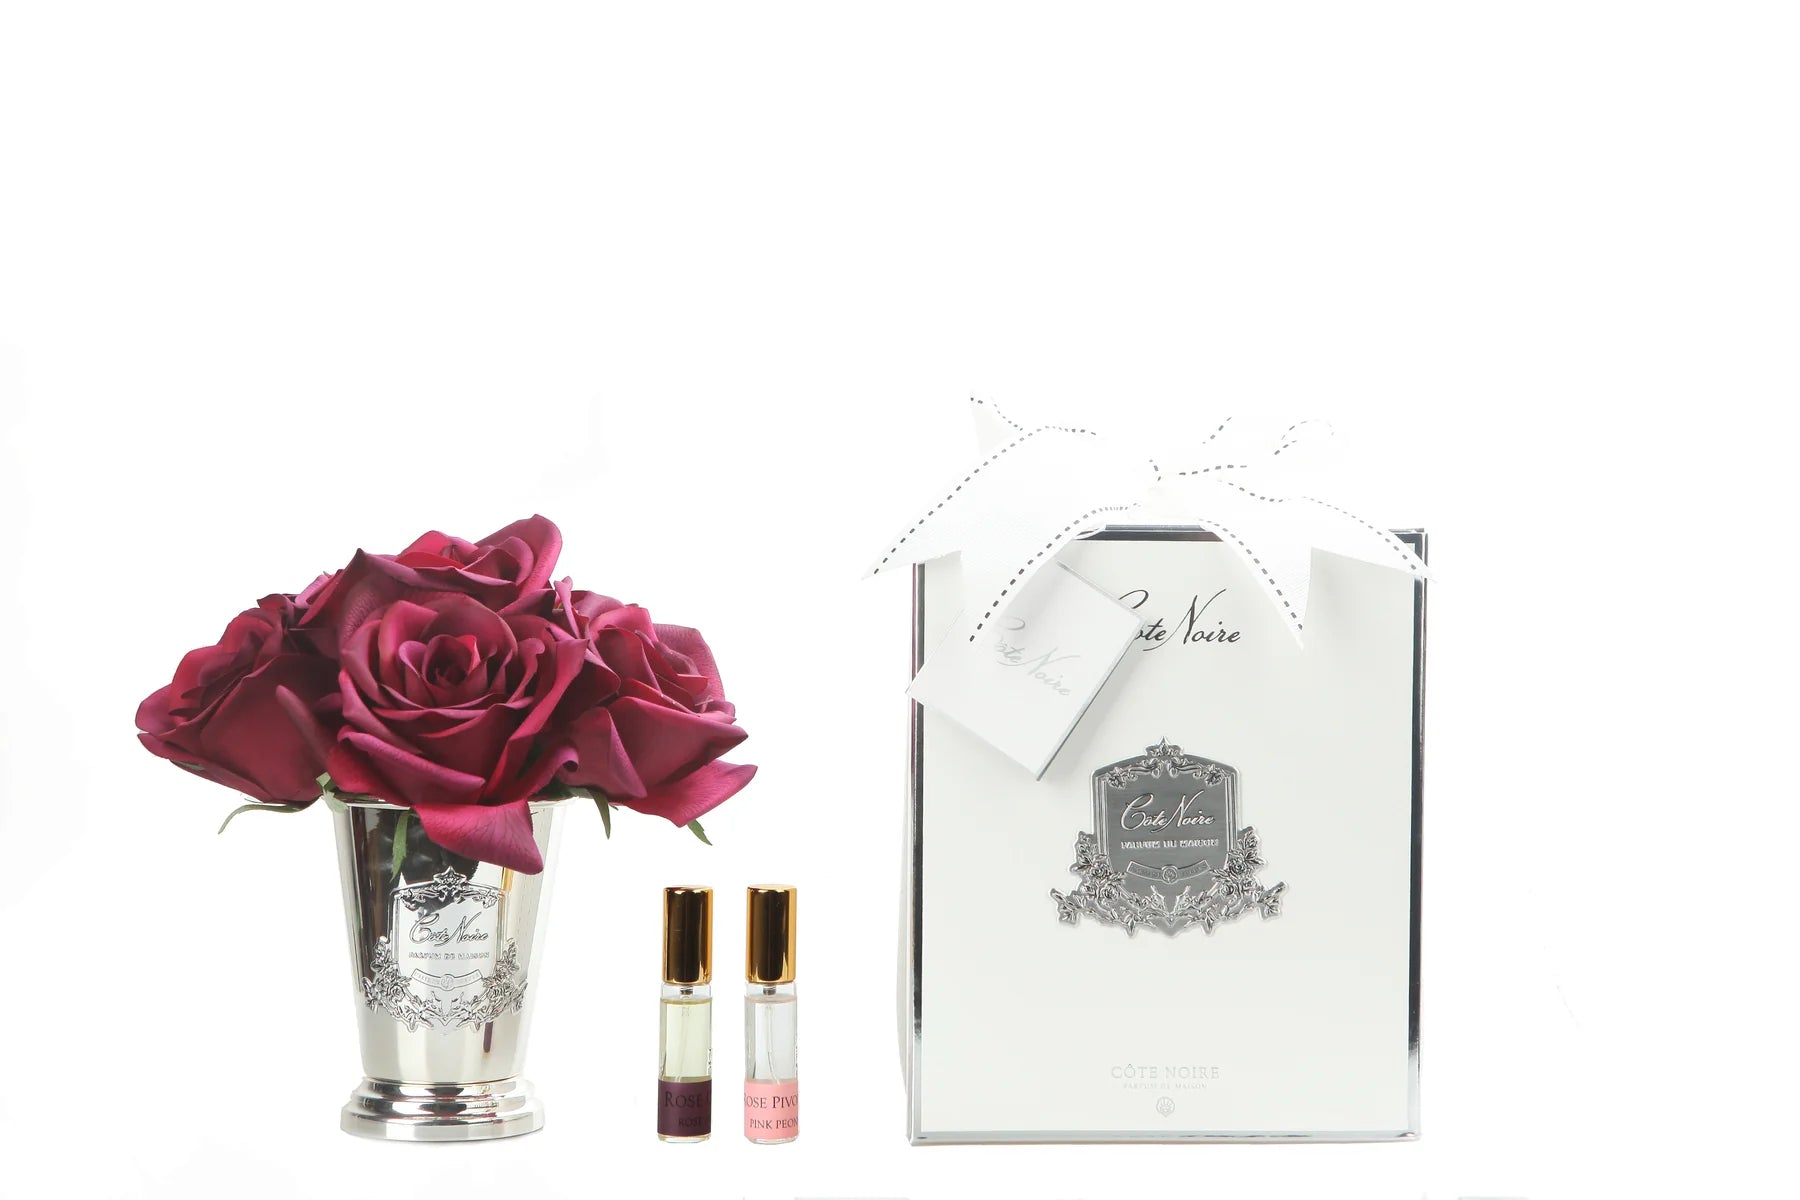 sieben karminrote rosen in silbernem kelch mit inschrift. dazu zwei parfumsprays und weisse geschenkbox mit schleife.